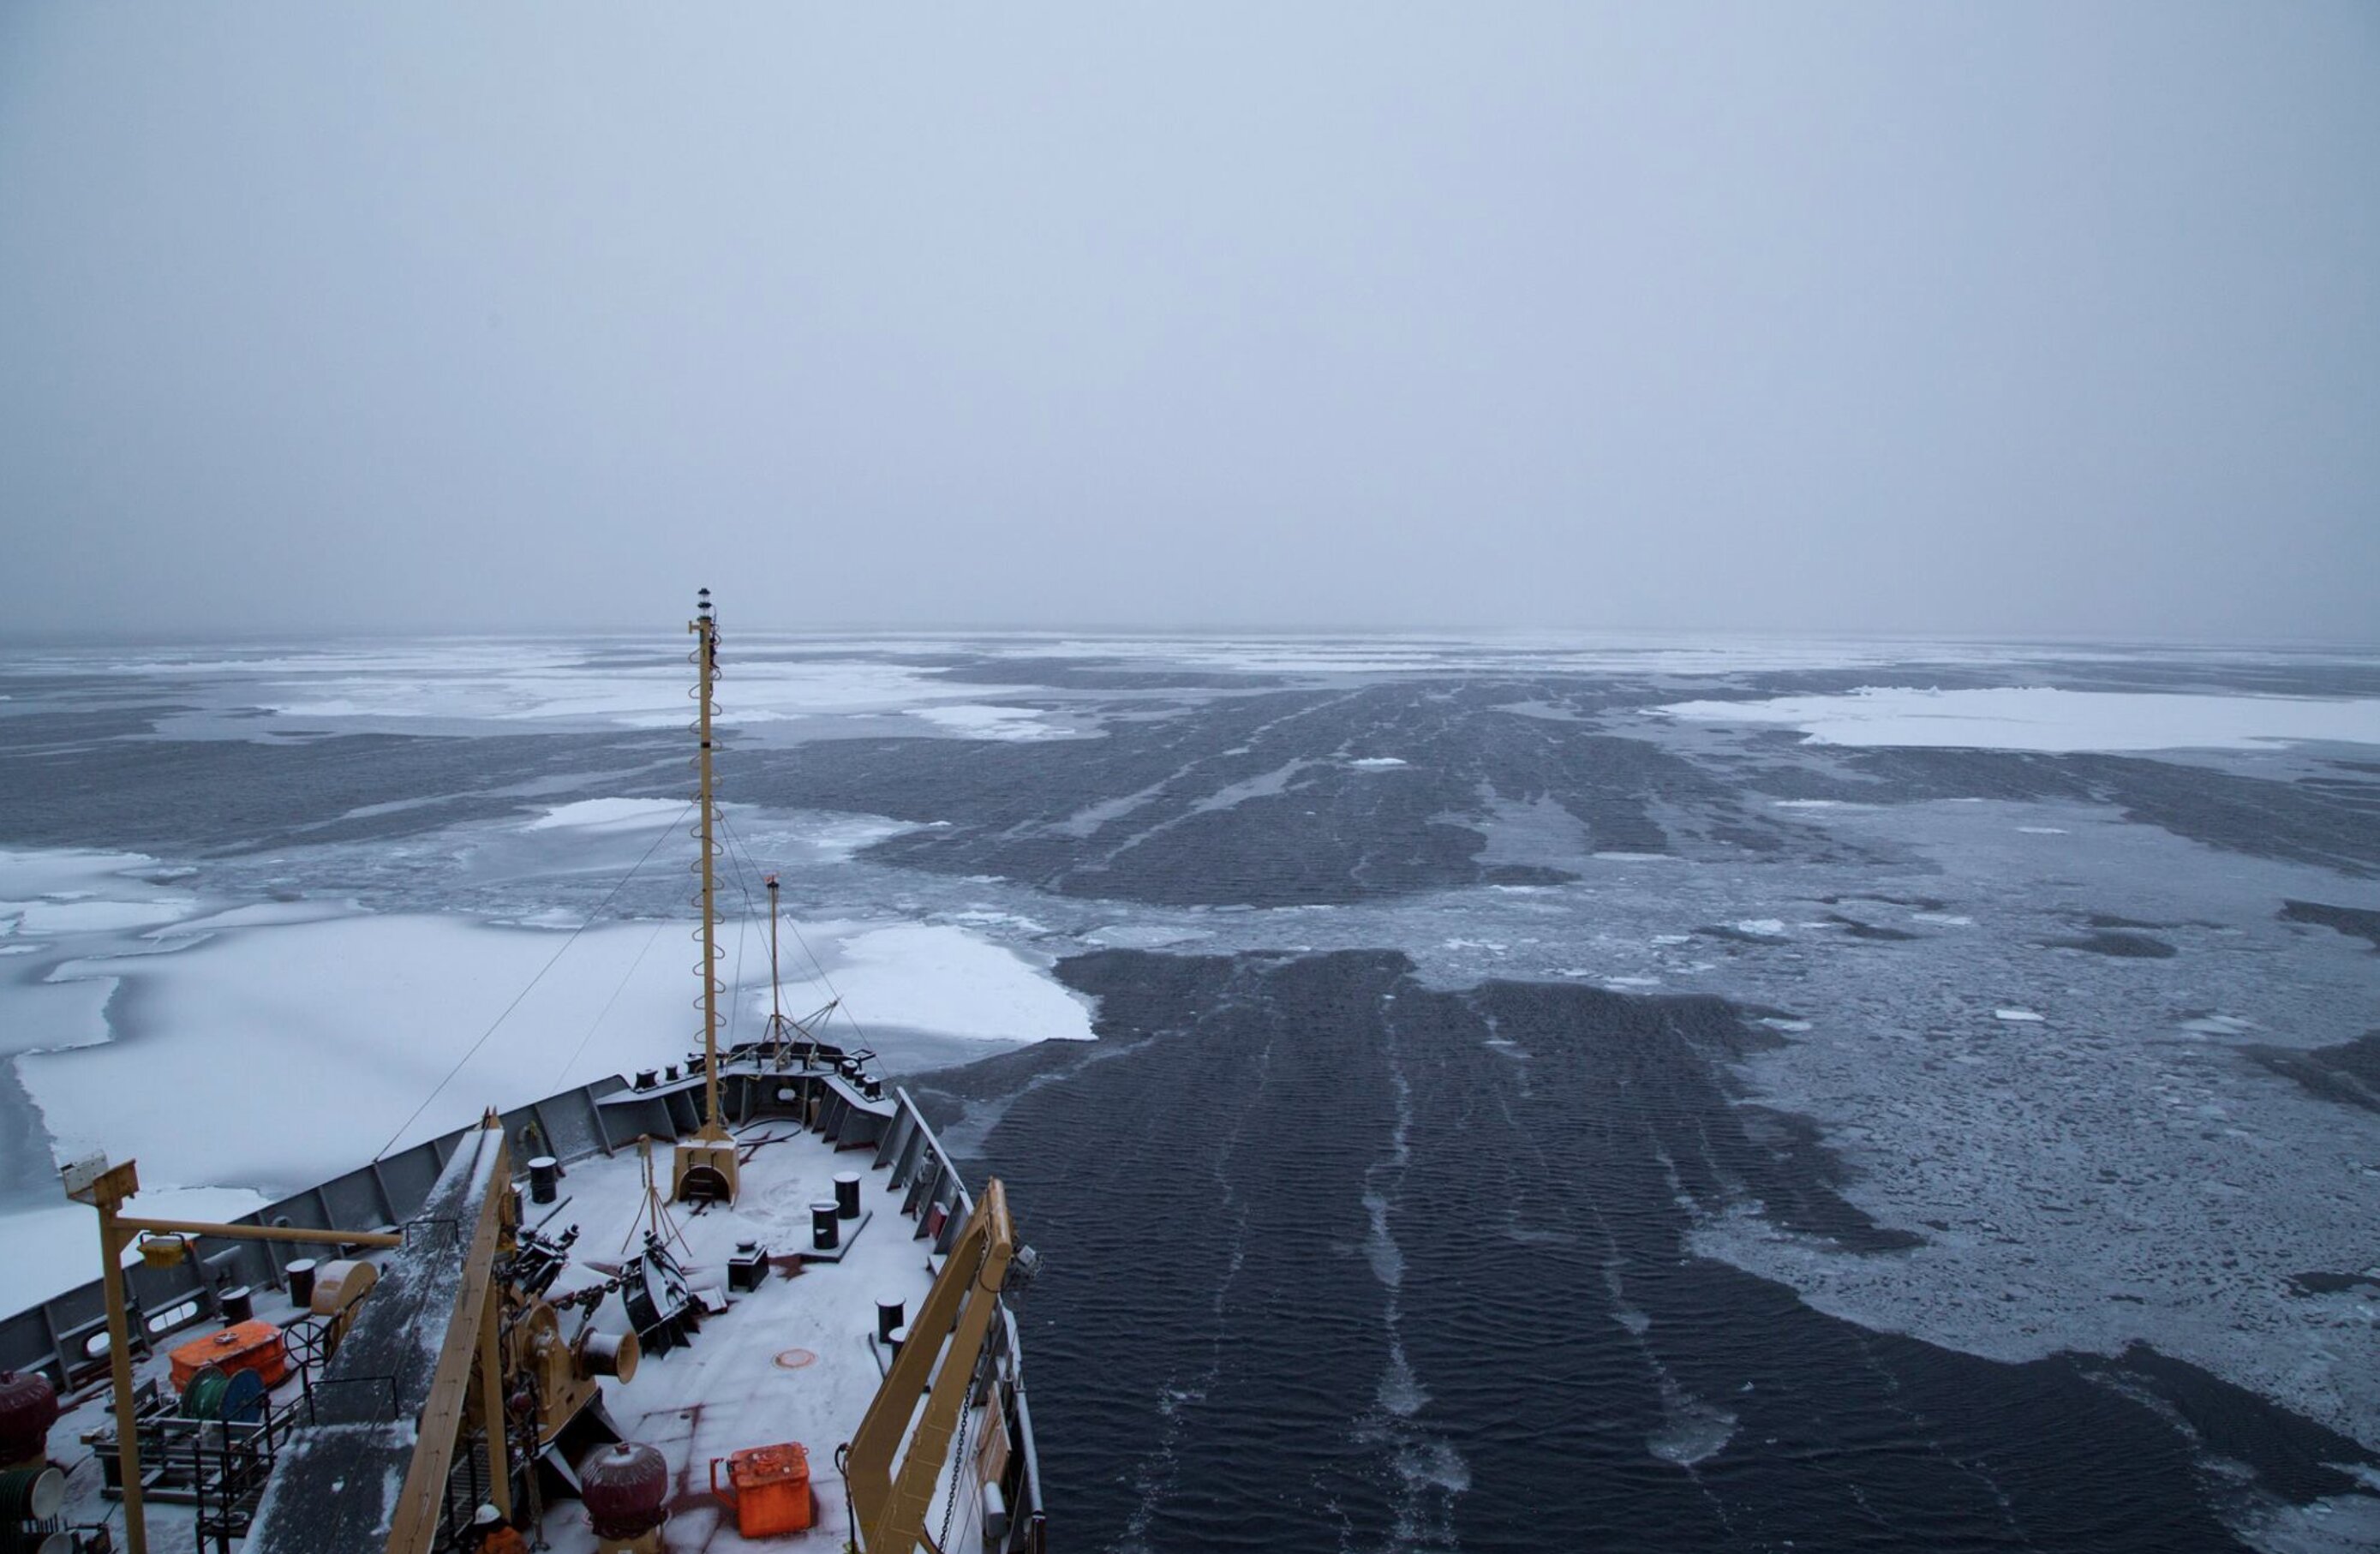 El ciclón ártico más poderoso jamás registrado provocó la pérdida repentina de hielo marino, según un estudio